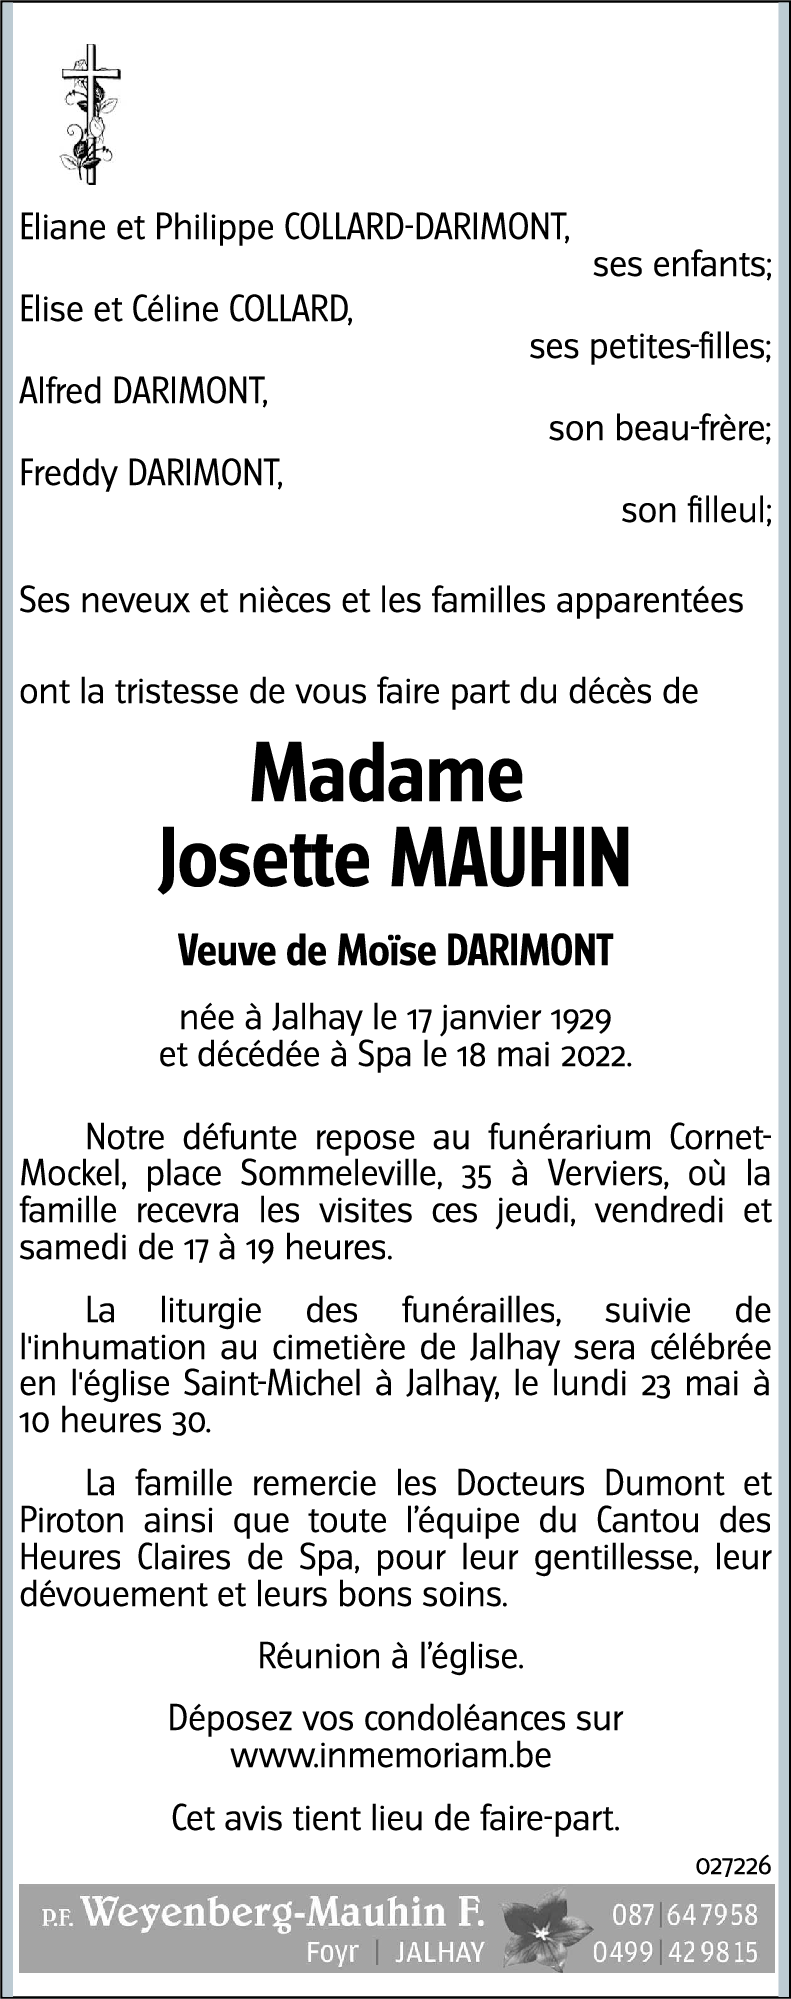 Josette Mauhin